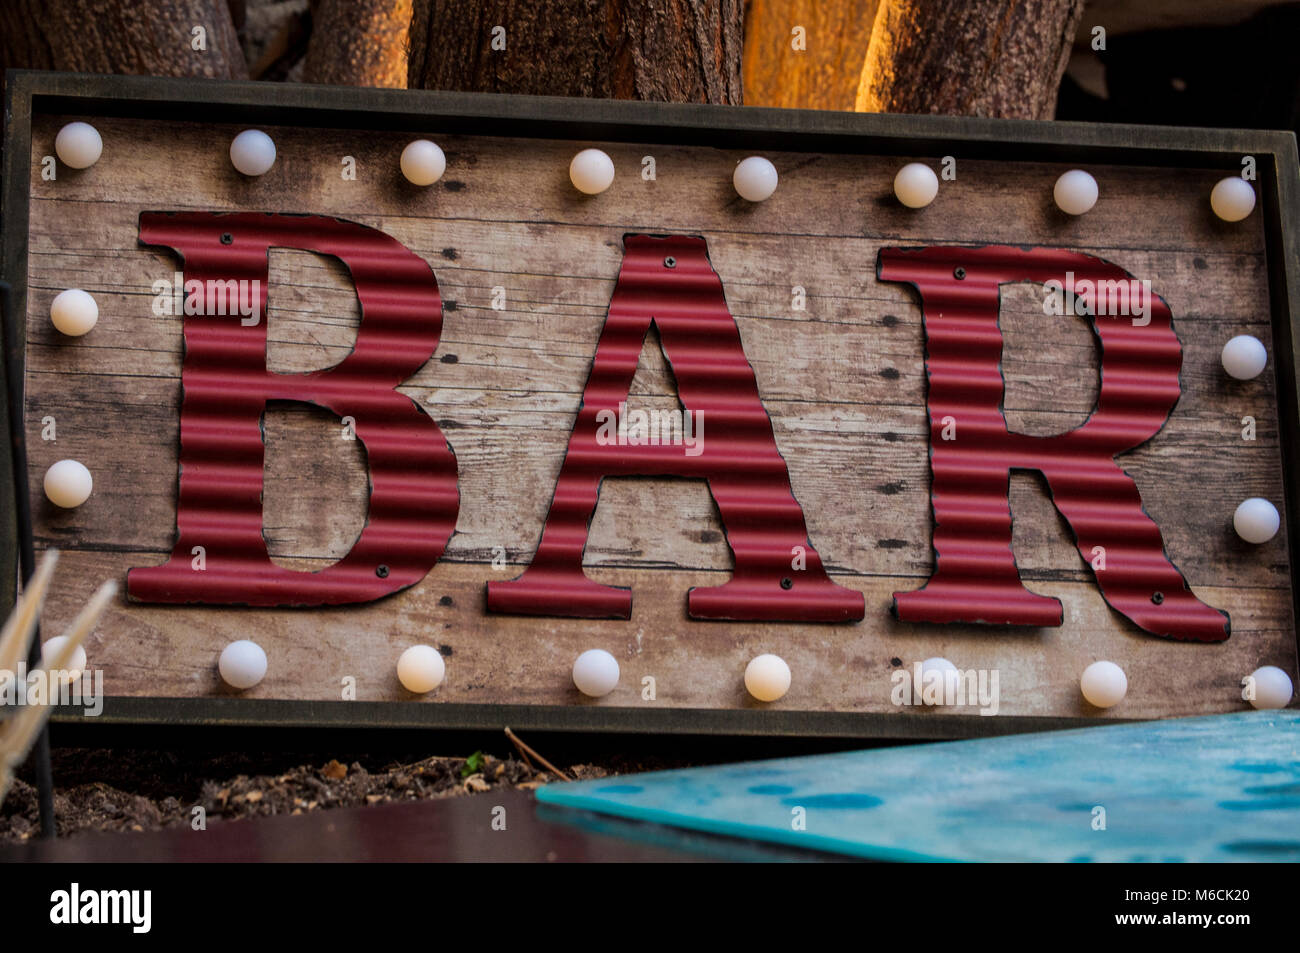 Vintage Bar Schild beleuchtet vor einem dunklen Hintergrund Stockfotografie  - Alamy